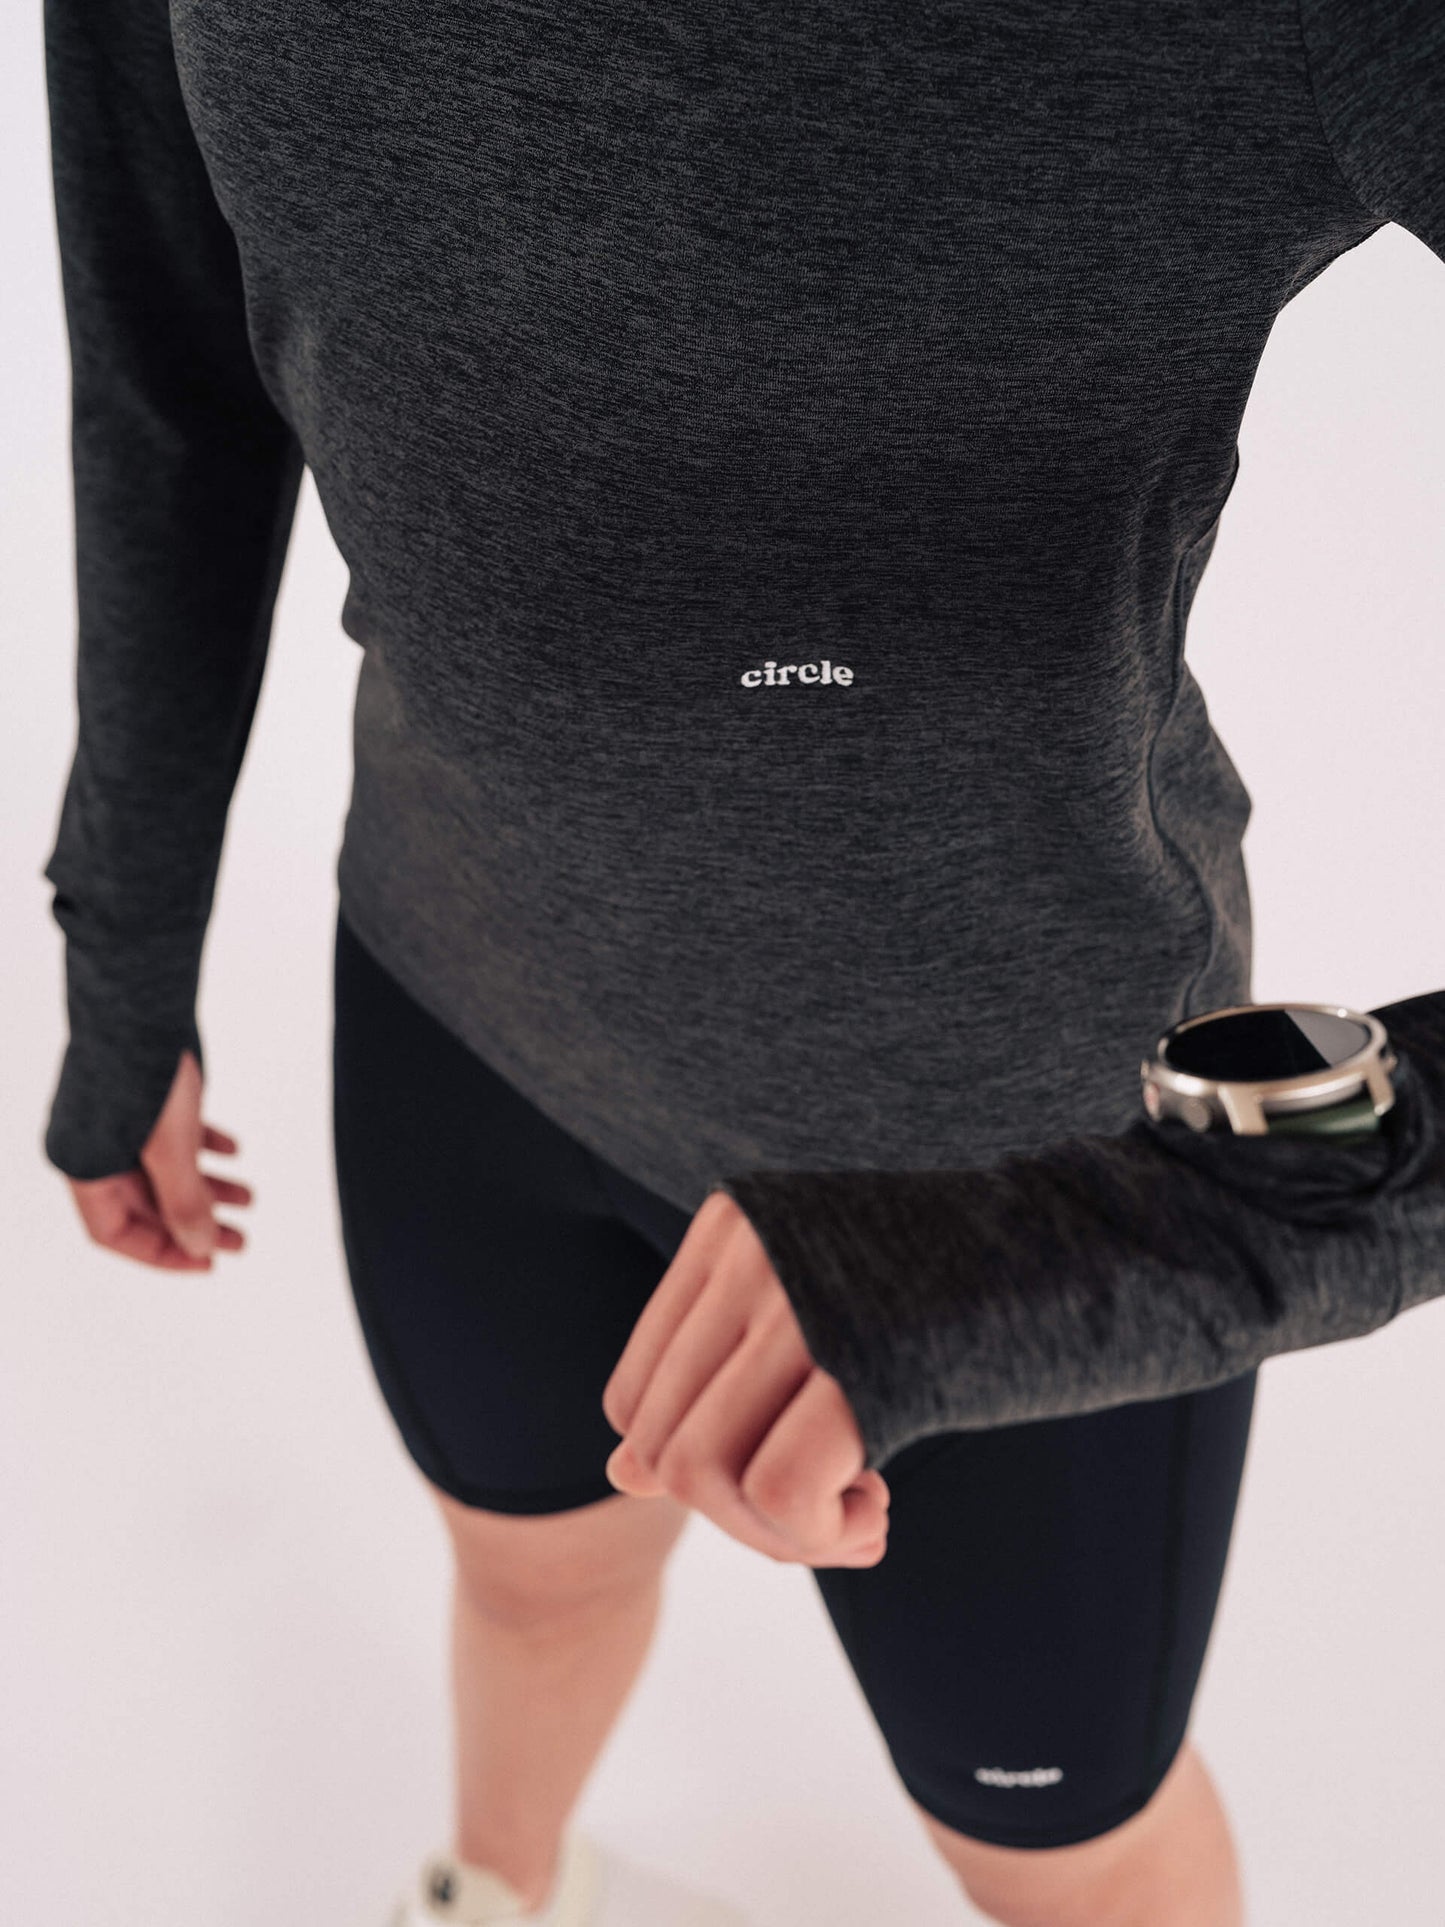 Tee-shirt manches longues Active Plus Carbon Sport HG - Femmes